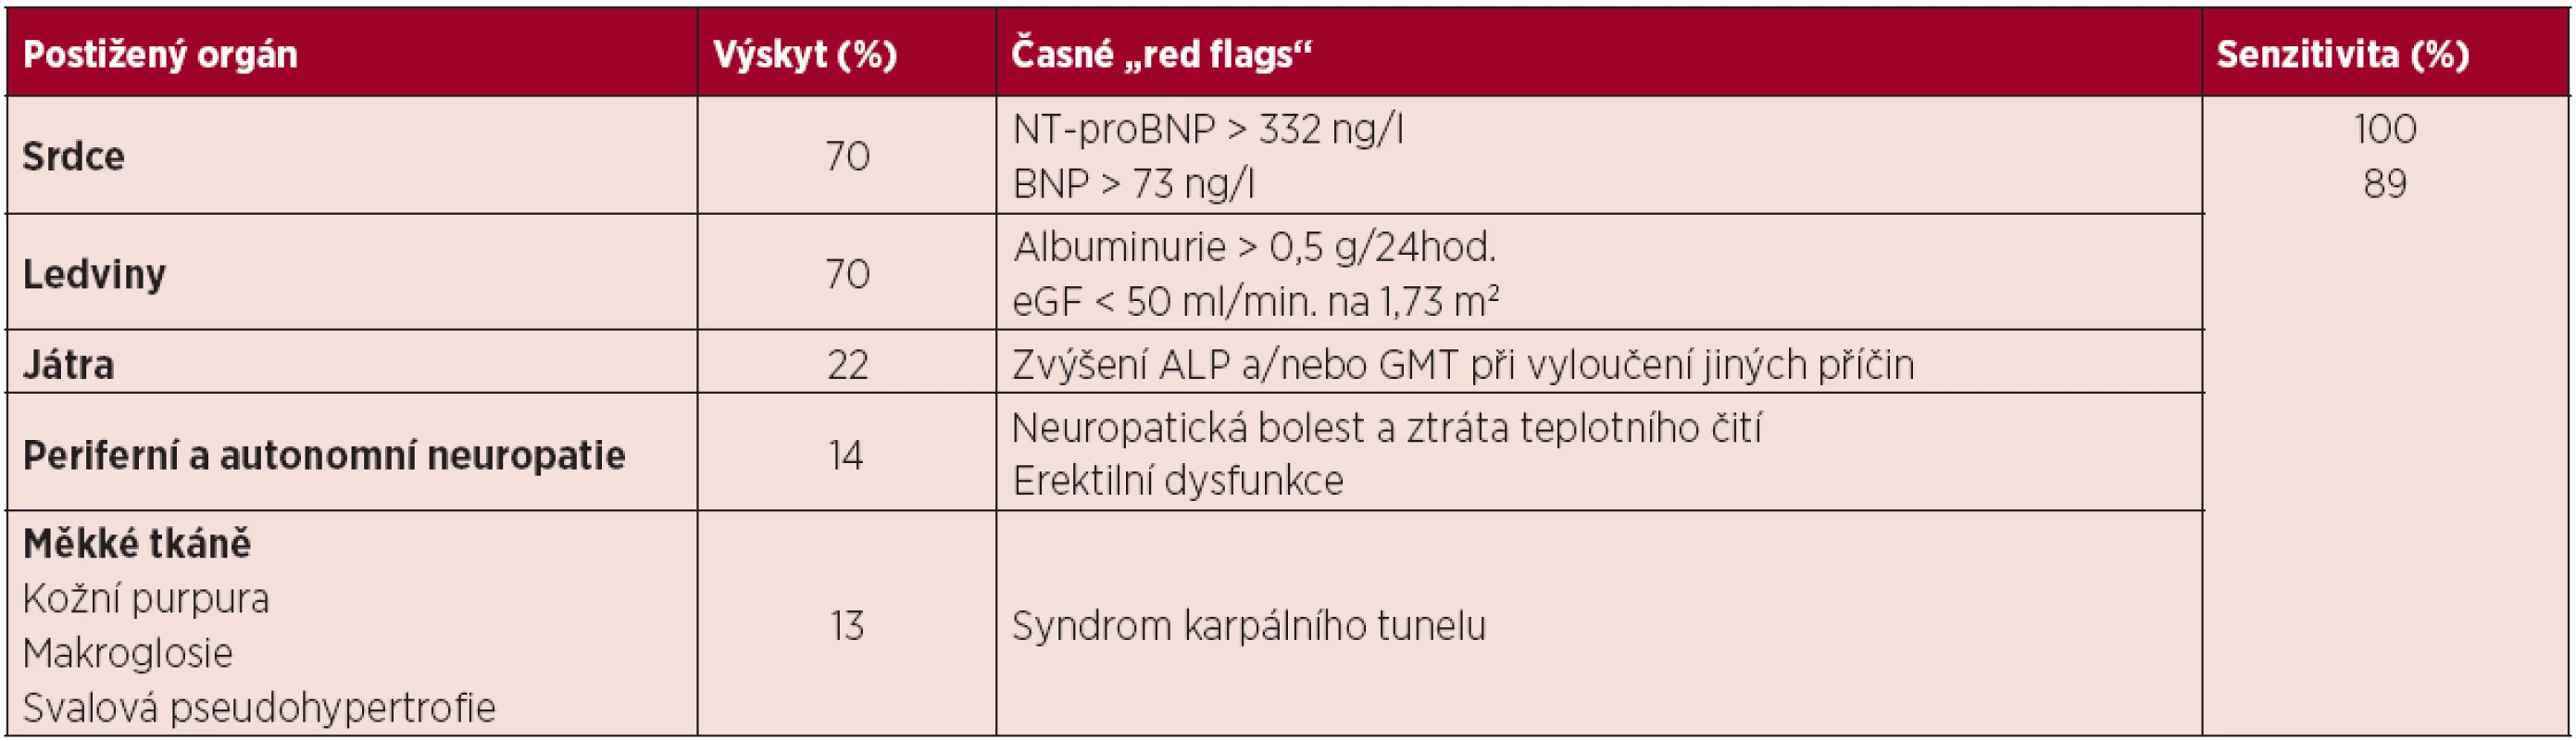 Varovné příznaky, nasvědčující možnosti systémové AL amyloidózy <em>(Merlini, 2012)</em>